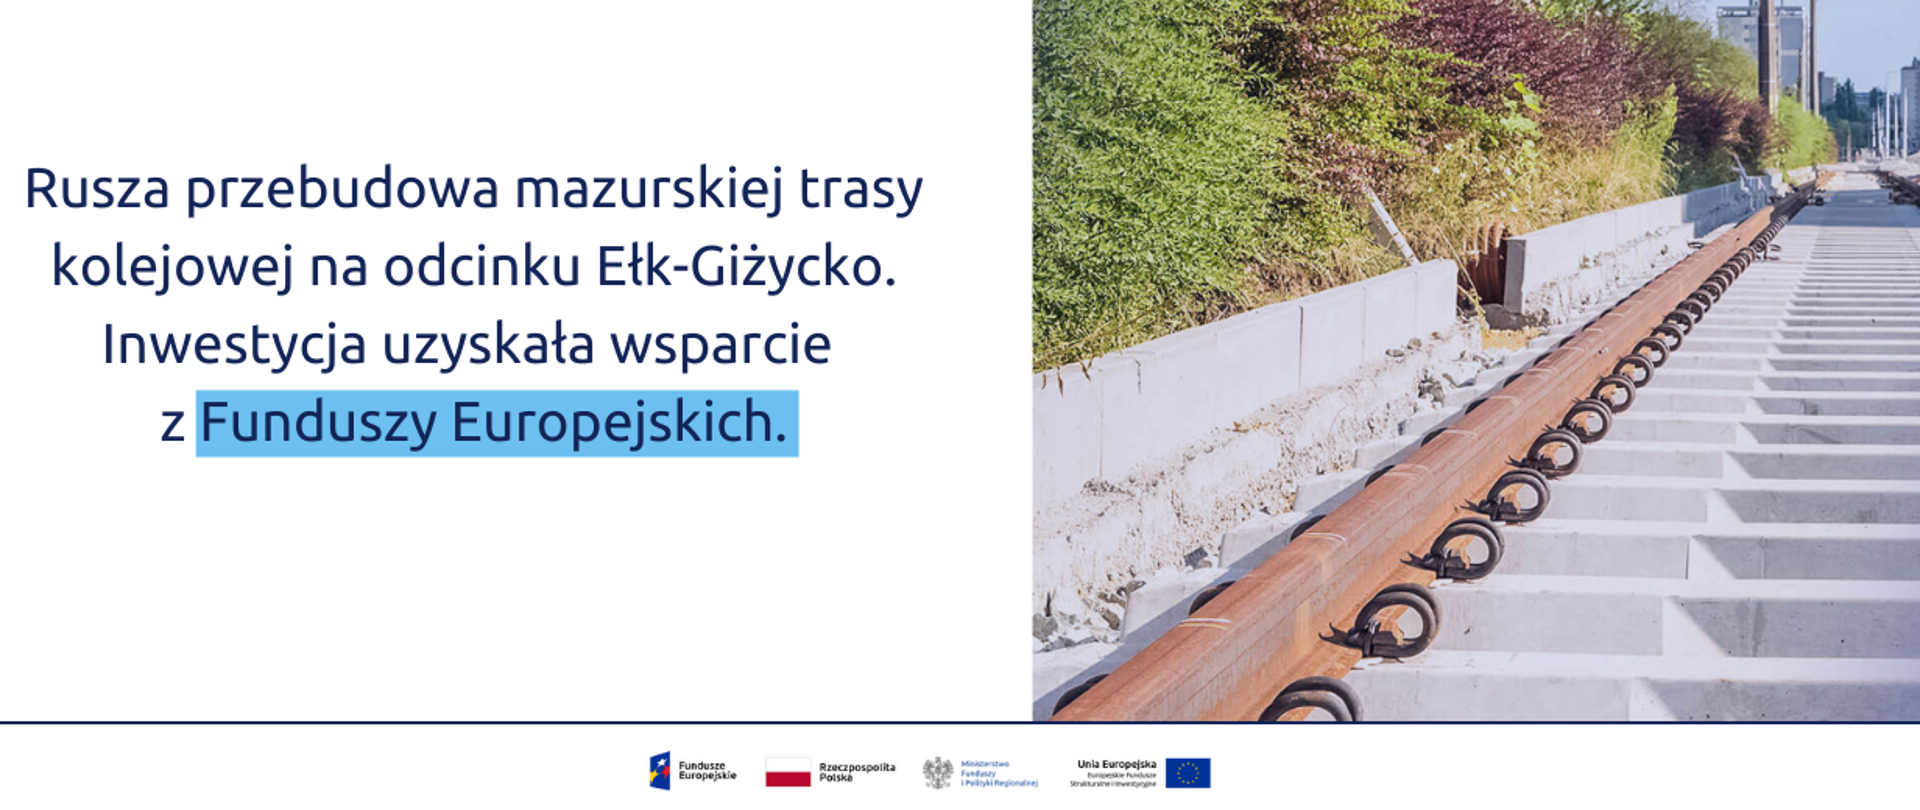 Rusza przebudowa mazurskiej trasy kolejowej na odcinku Ełk-Giżycko. Inwestycja uzyskała wsparcie z Funduszy Europejskich.